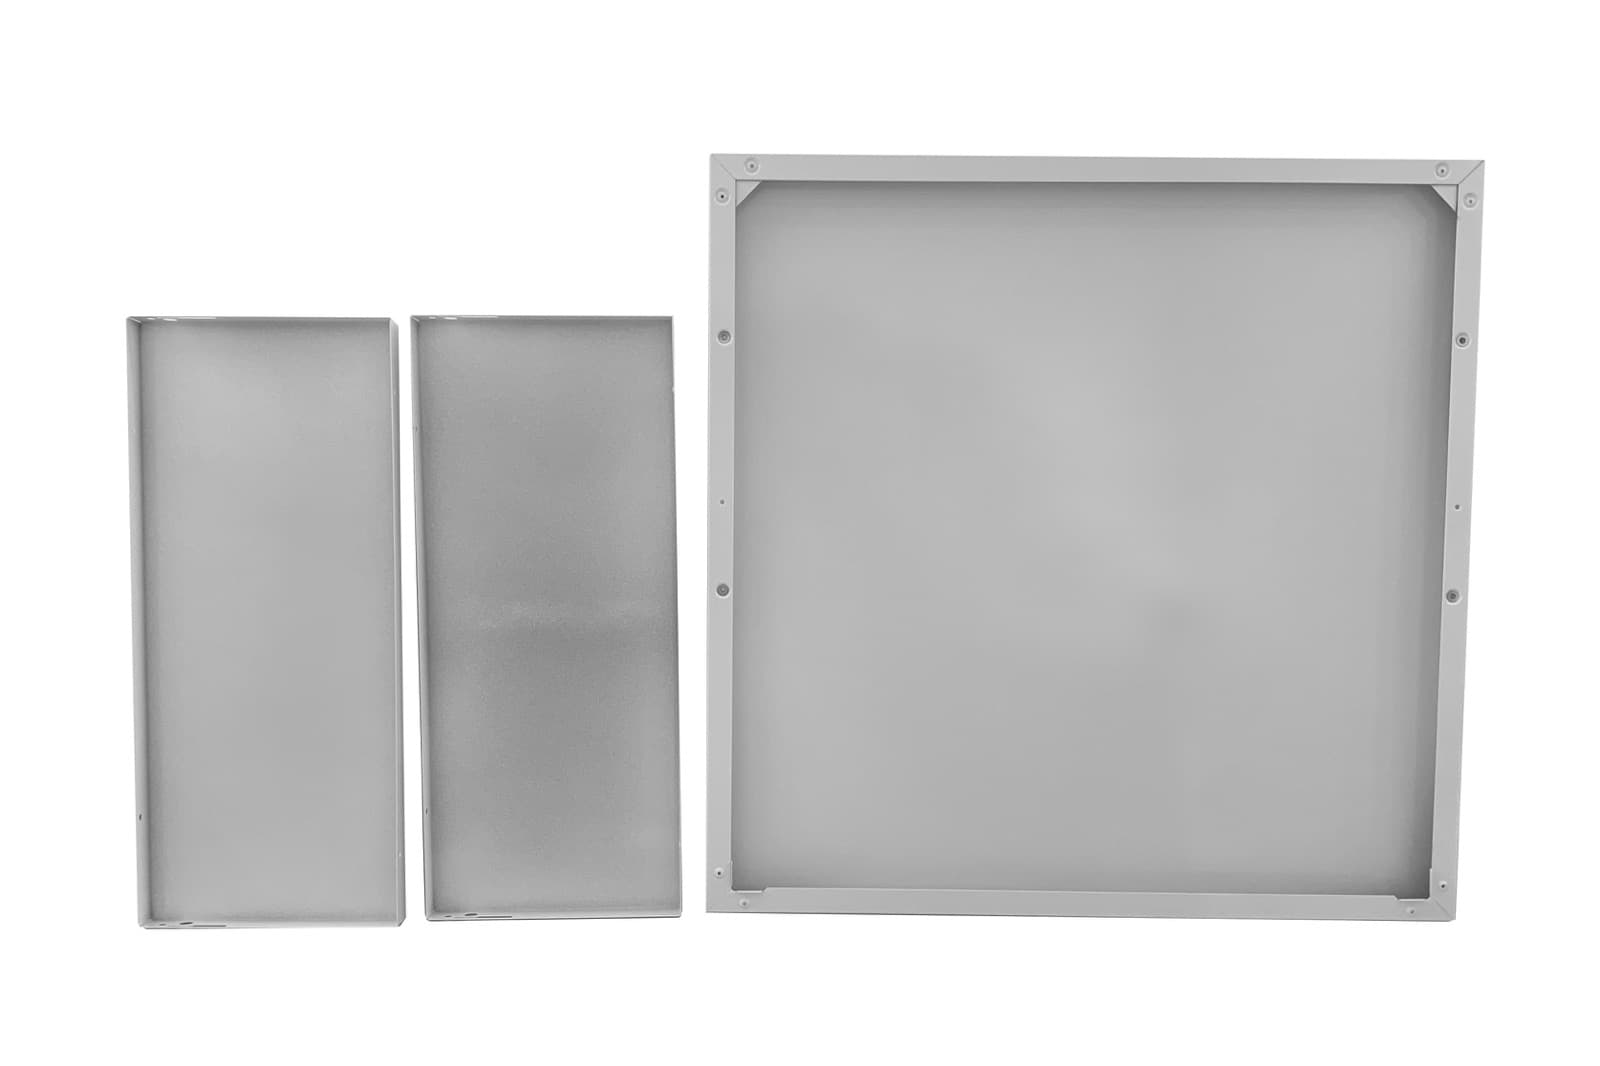 キューブ型レンジフード 天井取付用センターパーツ（照明なし用） KB-KC019-OP47-G162 裏側の様子（写真はH600タイプホワイト）